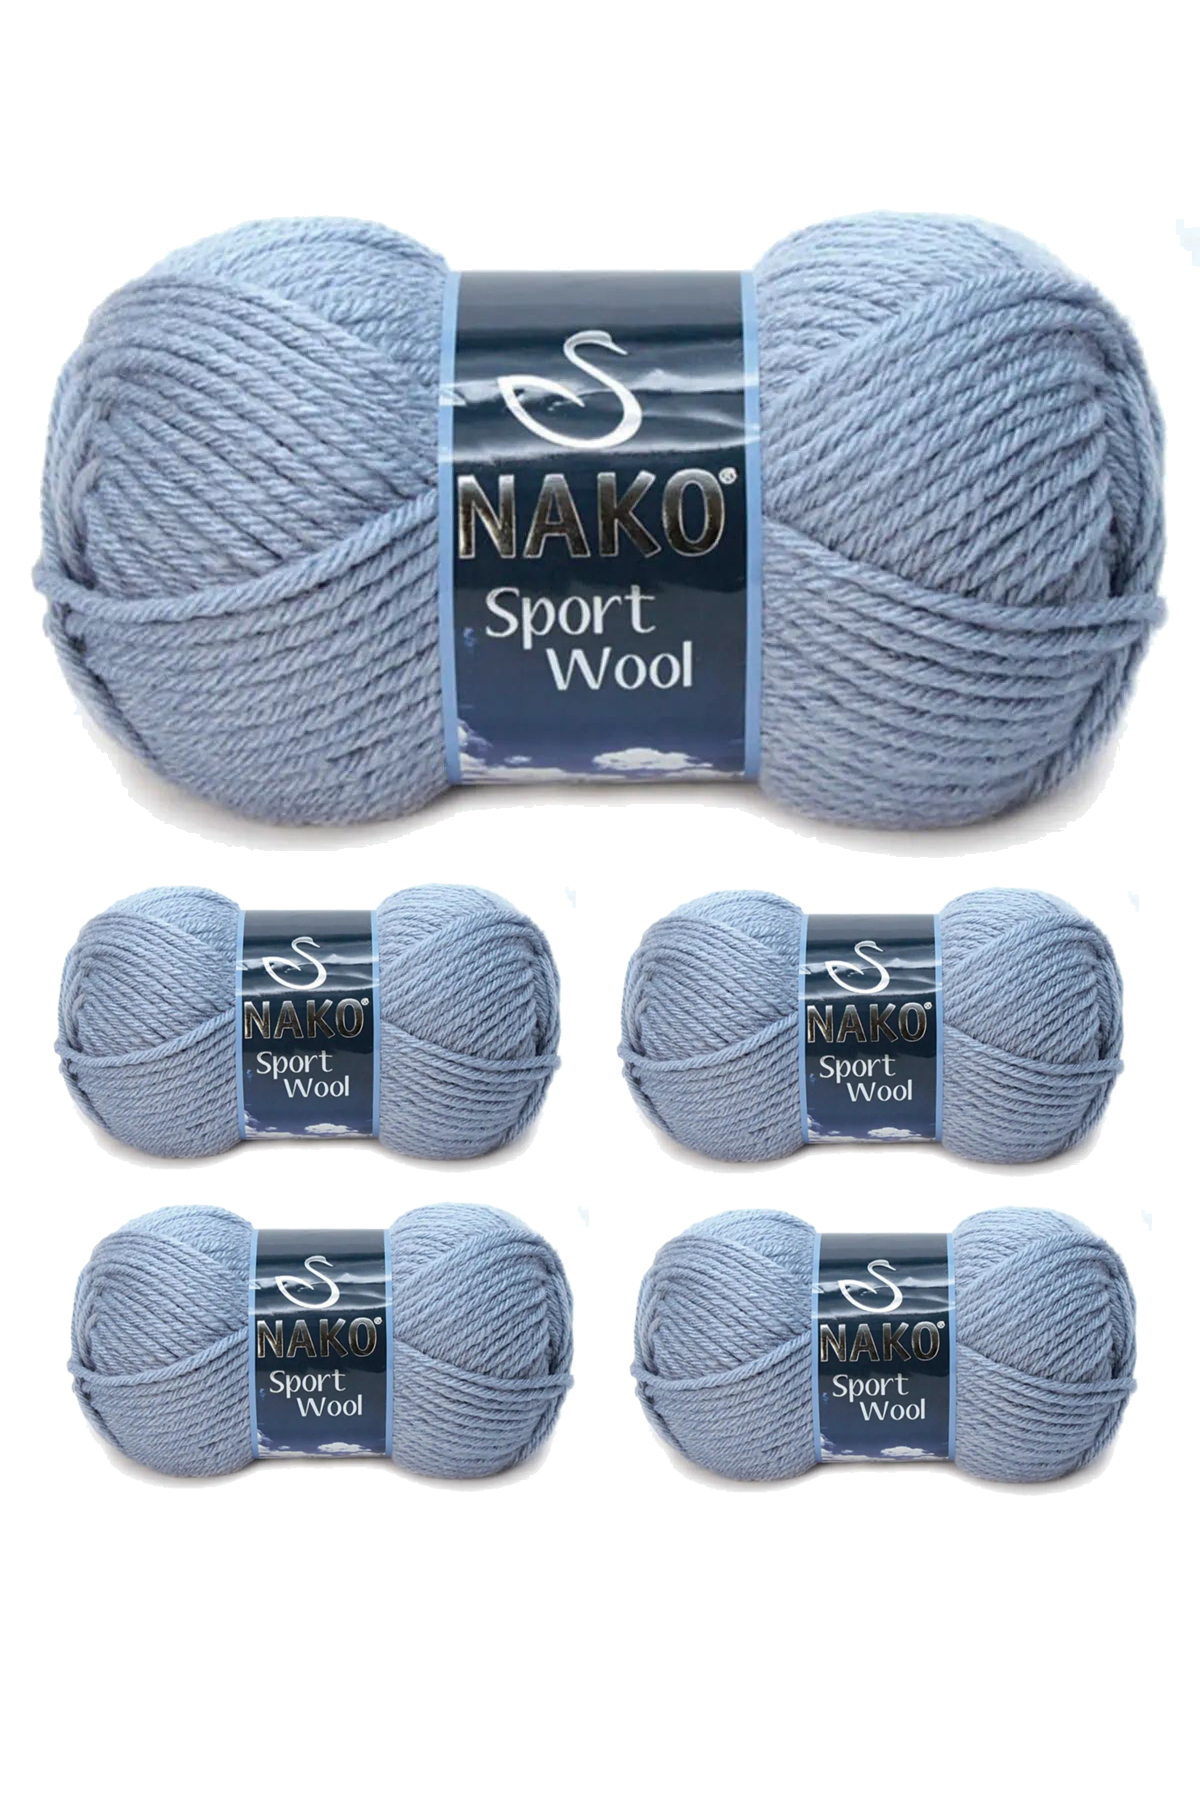 5 Adet Sport Wool Atkı Bere Ceket Yelek Örgü İpi Yünü No: 11223 Denim Melanj